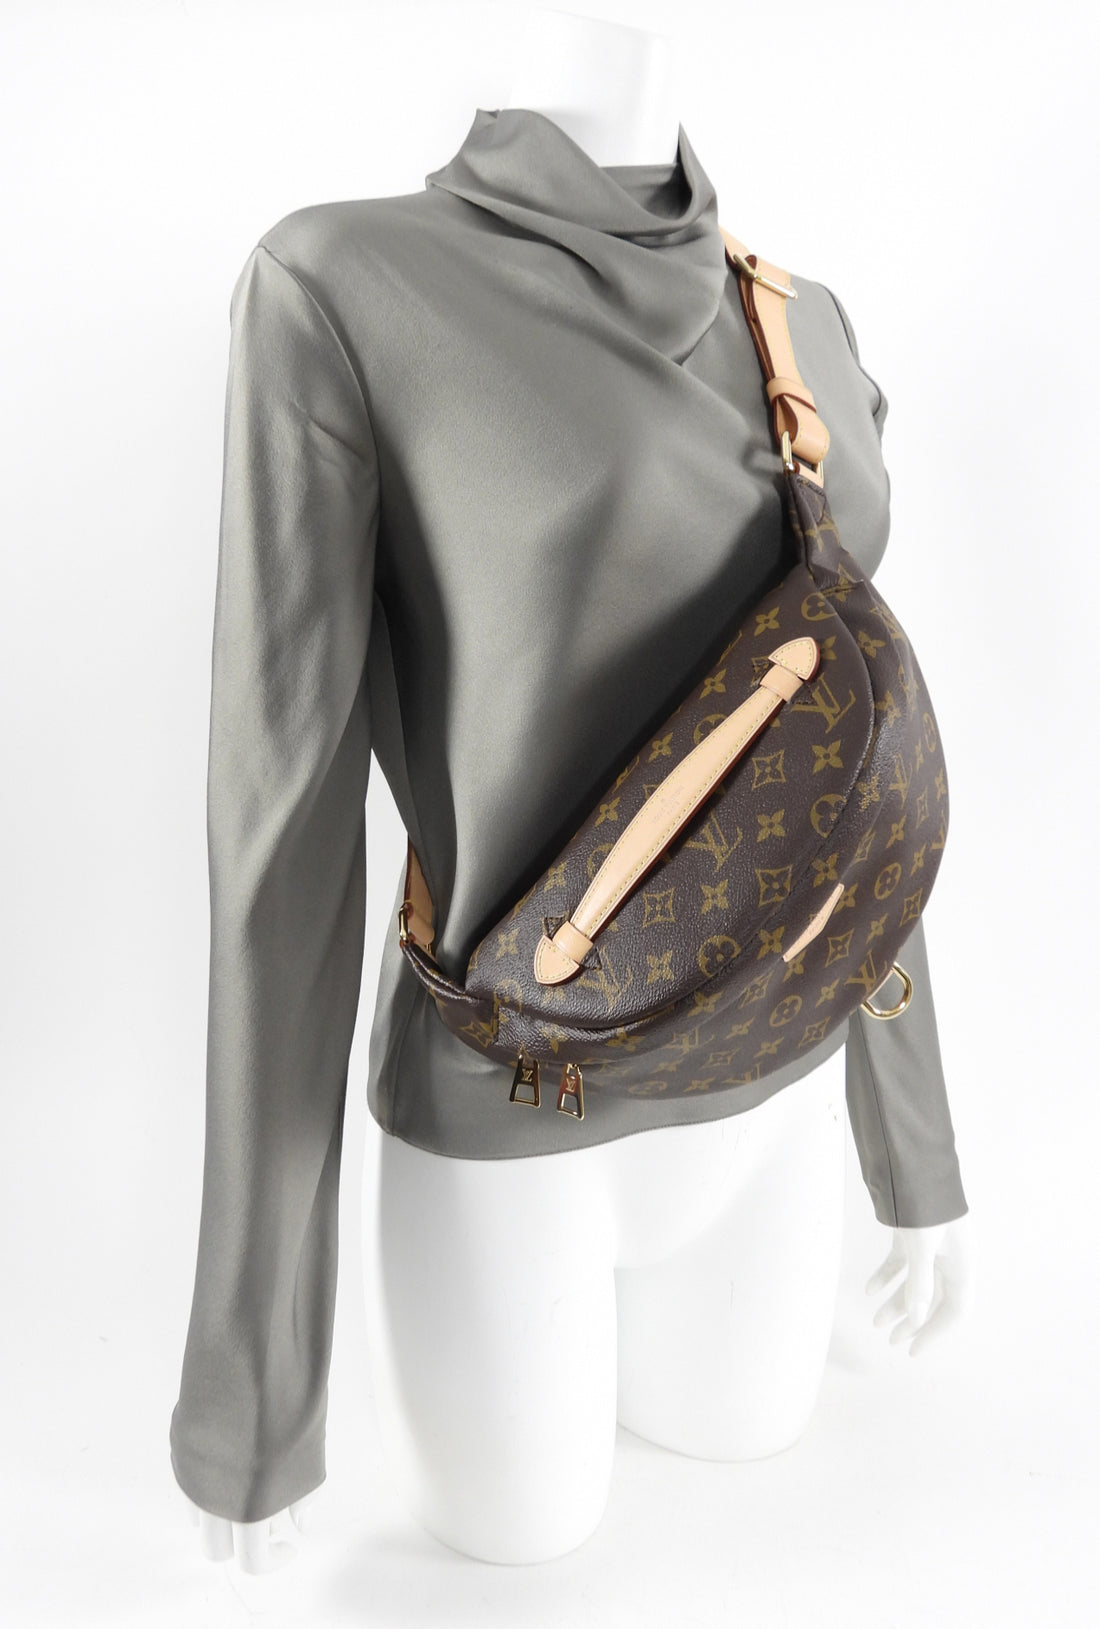 Louis Vuitton Monogram Canvas MM Bum Bag - Waist Bag – I MISS YOU VINTAGE